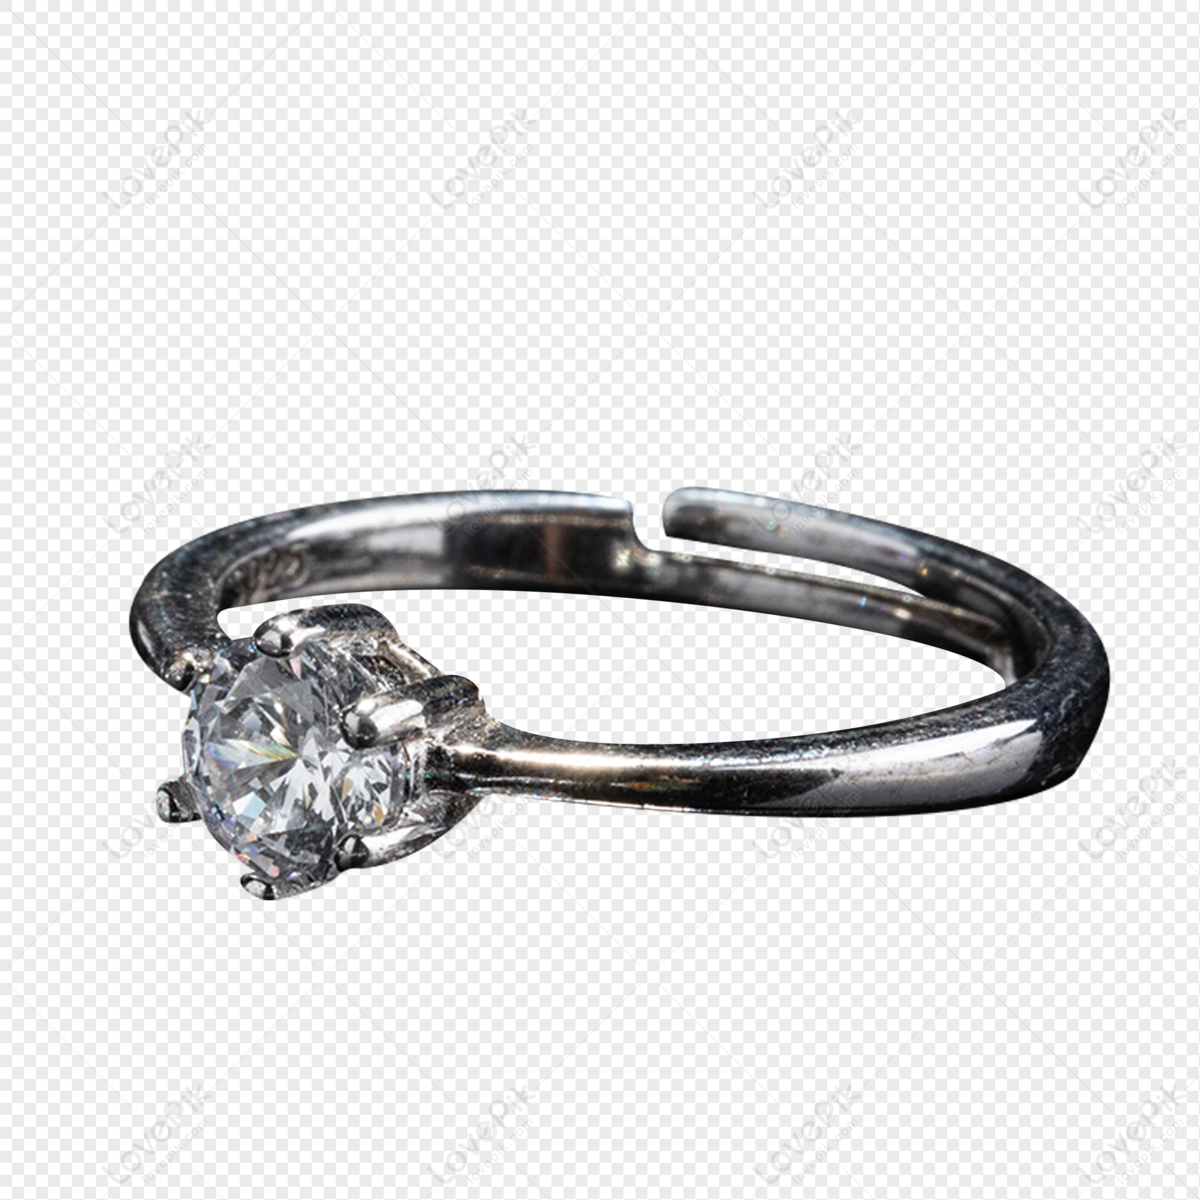 5 Beautiful 2nd Marriage Wedding Rings - Shopping Guide